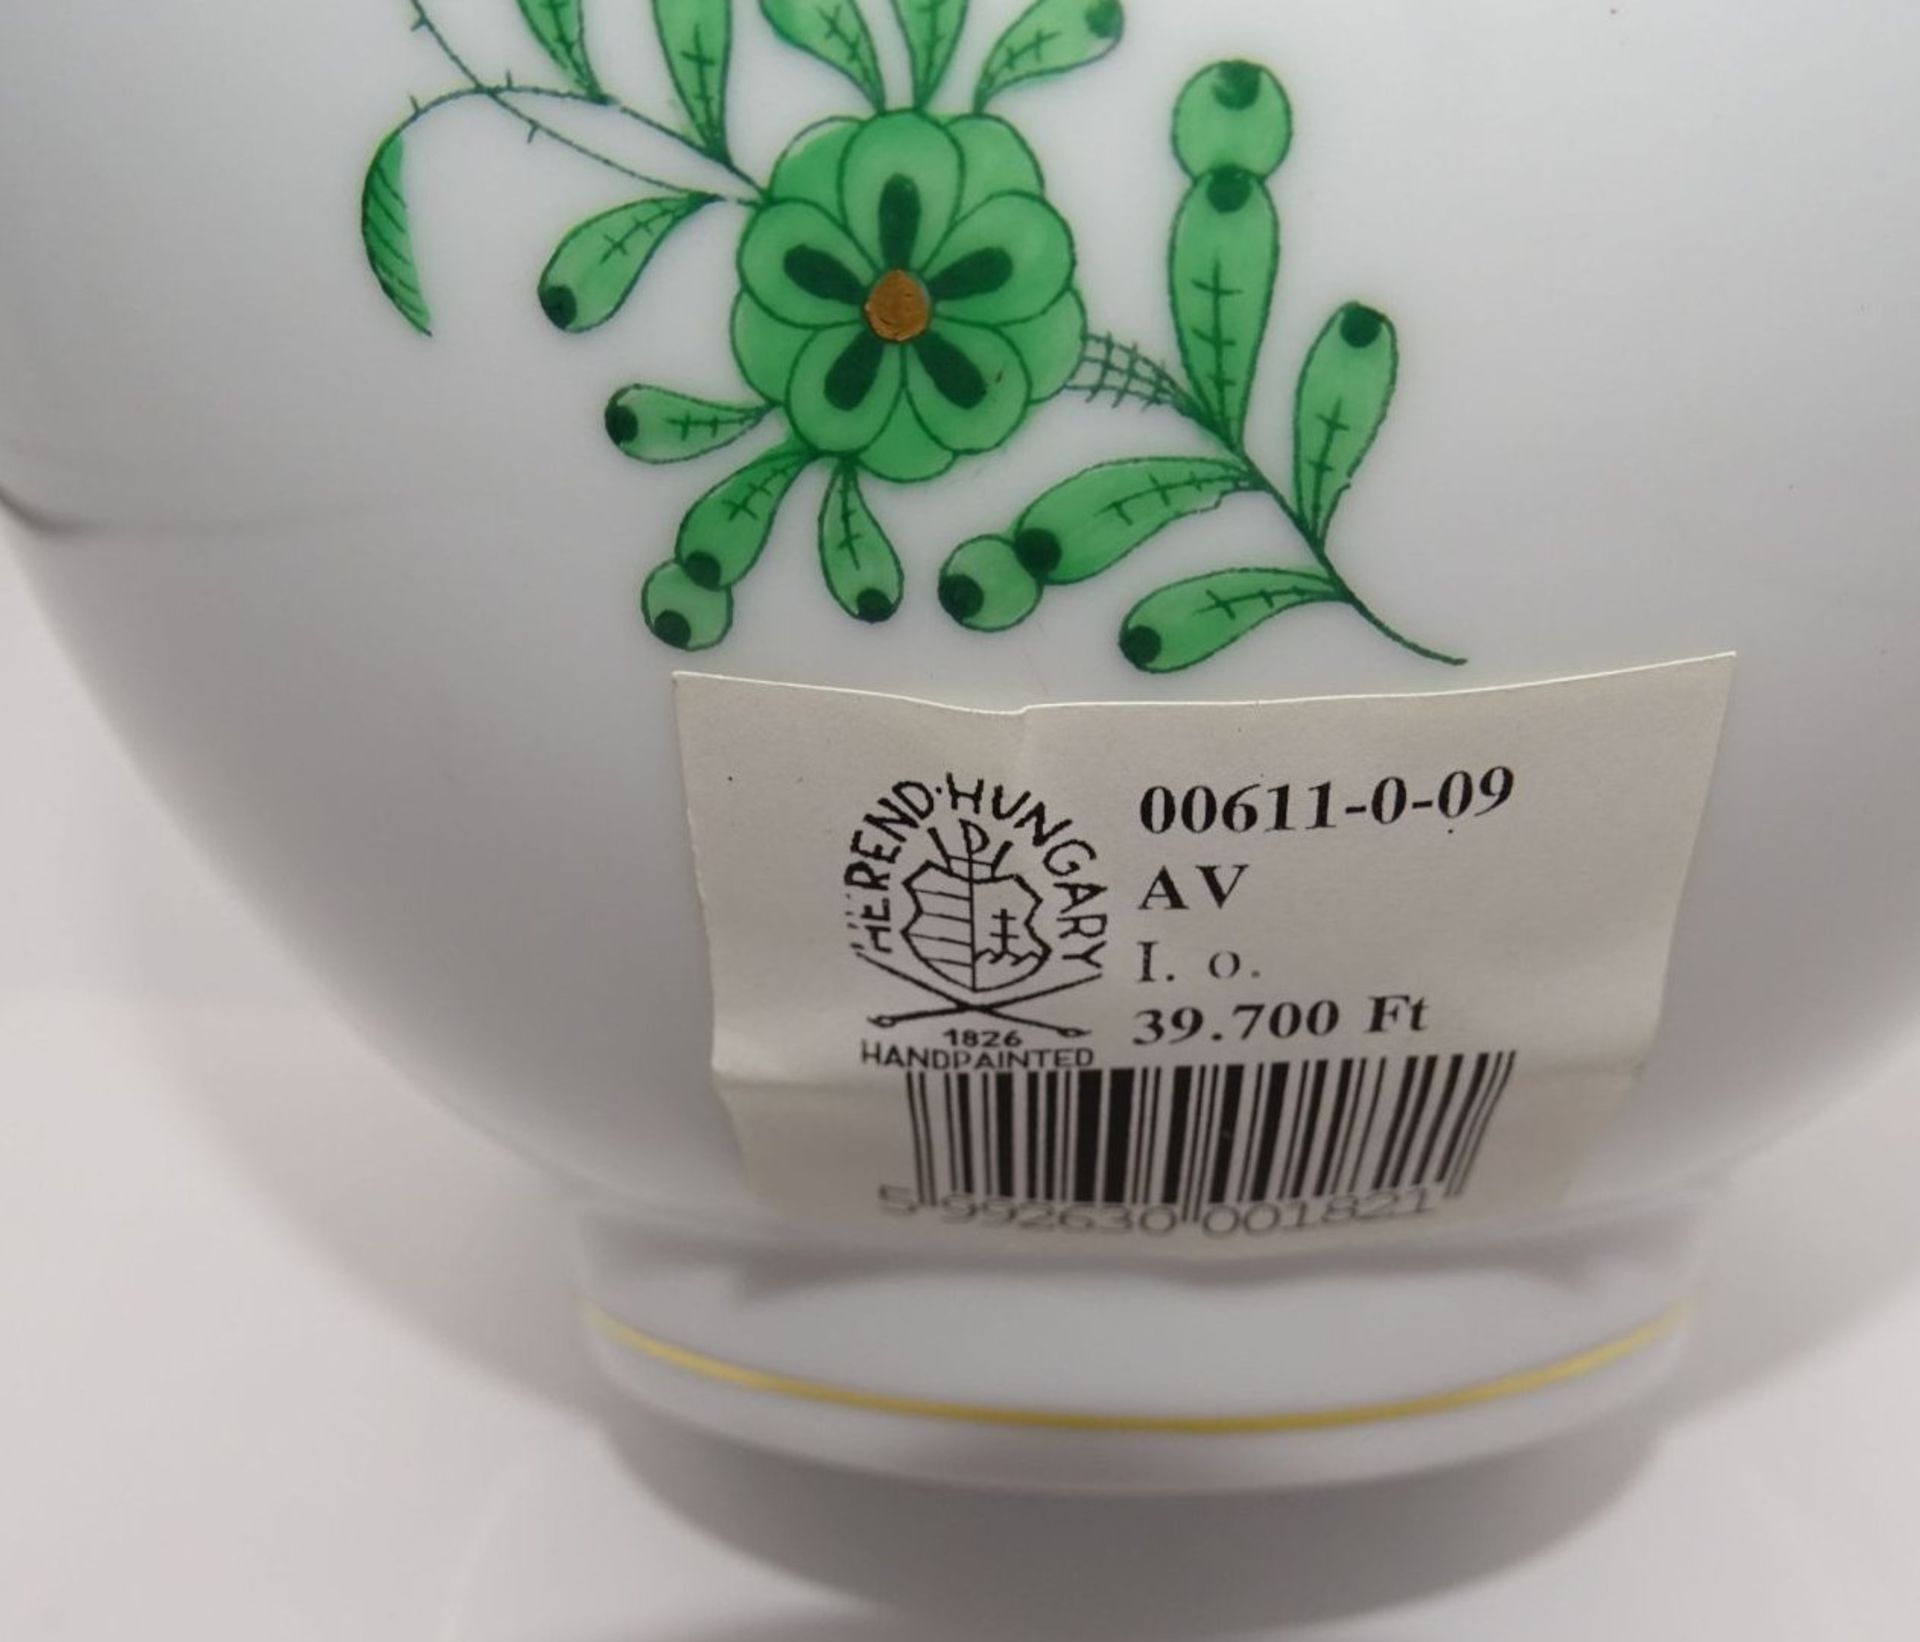 grosse Kaffeekanne "Herend" Apponyi grün, Deckelrose minimaler Glasurabplatzer, H-25 cm, noch mit - Bild 3 aus 7